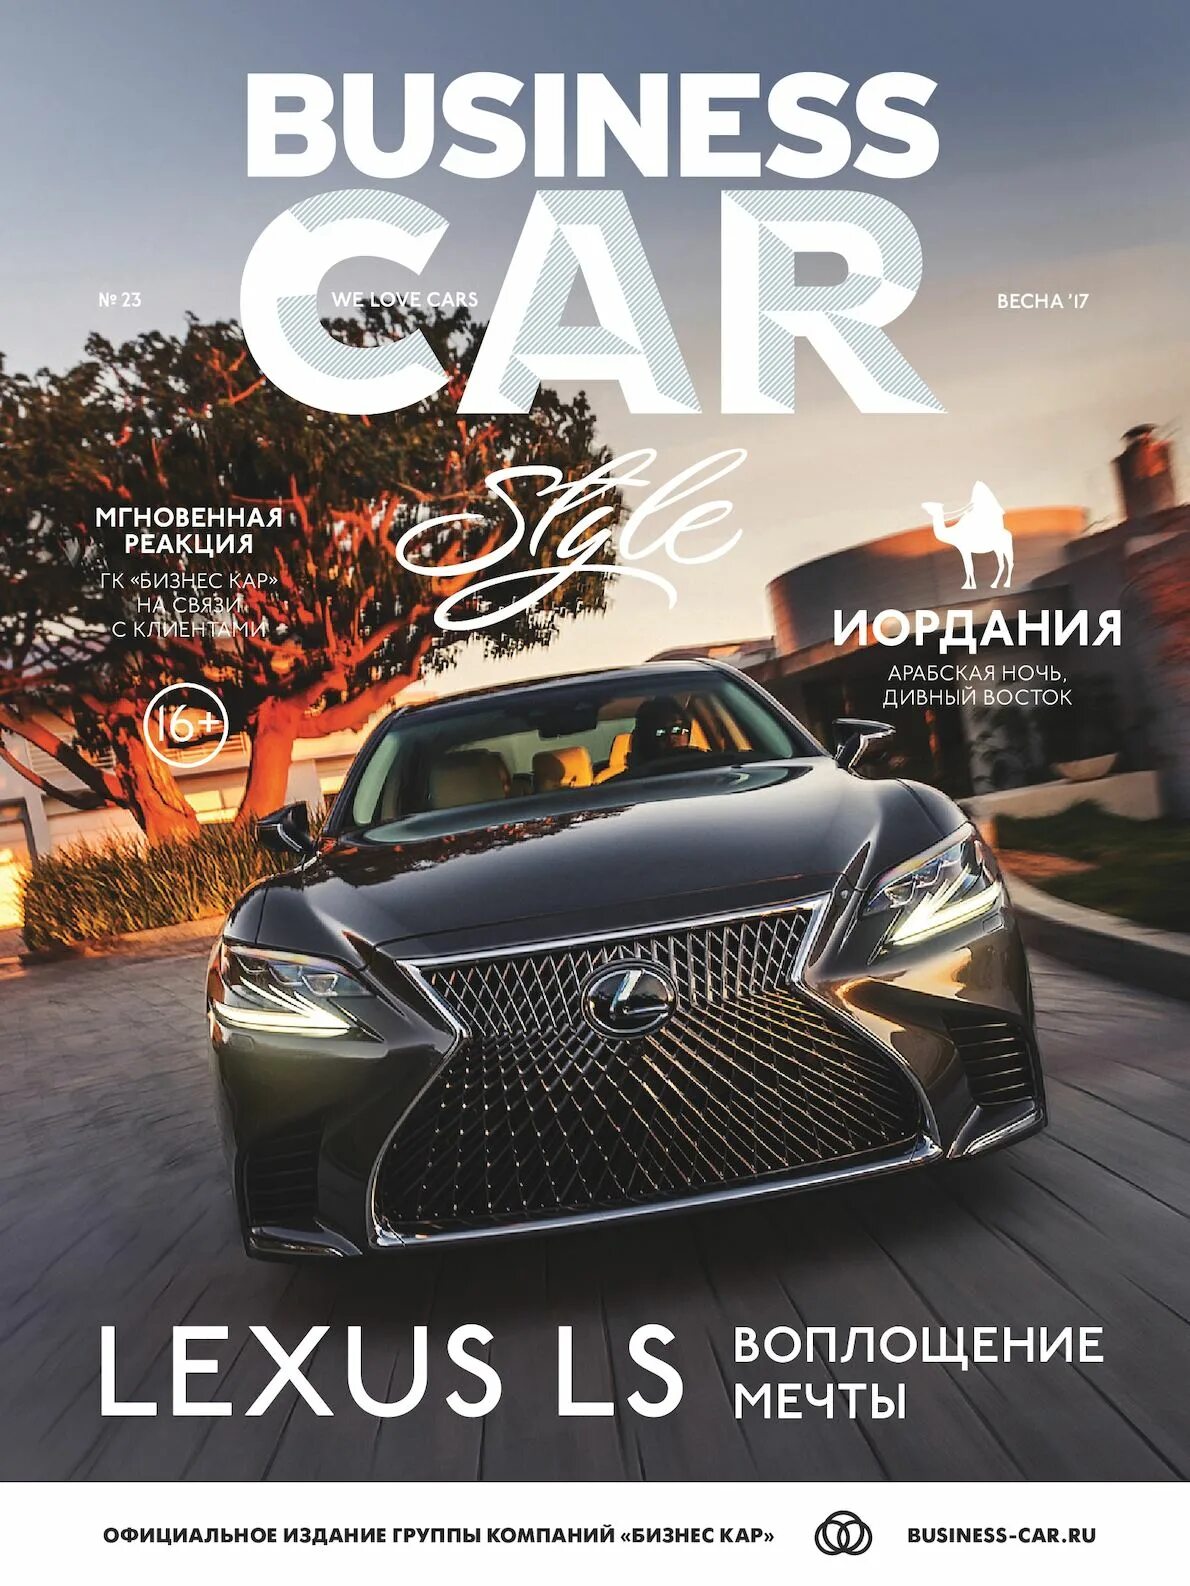 Car magazine. Лексус журнал. Обложка журнала автомобилей. Обложка журнала про машины.